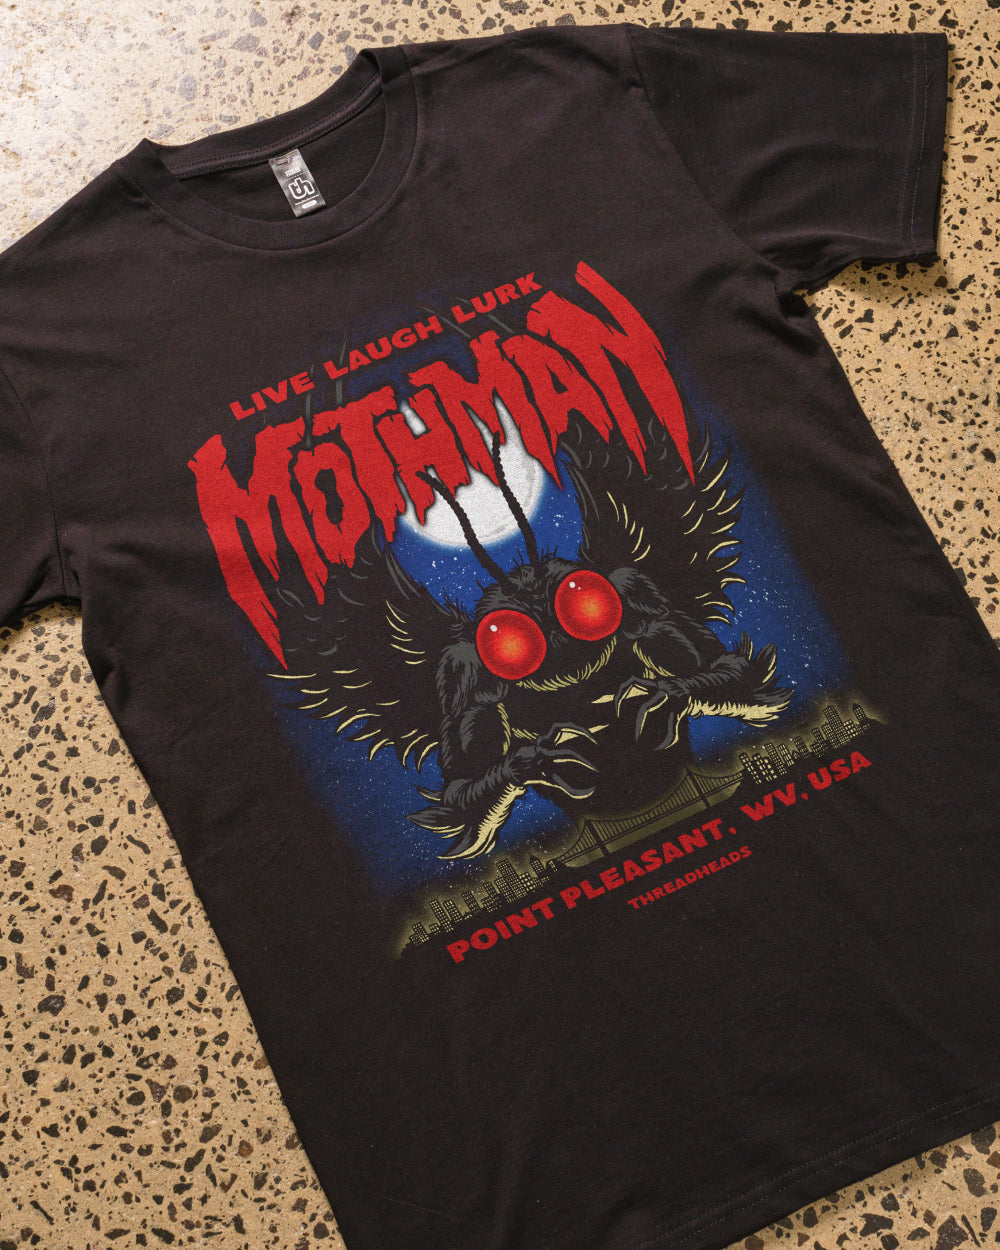 Mothman - Live Laugh Lurk T-Shirt Australia Online #colour_black